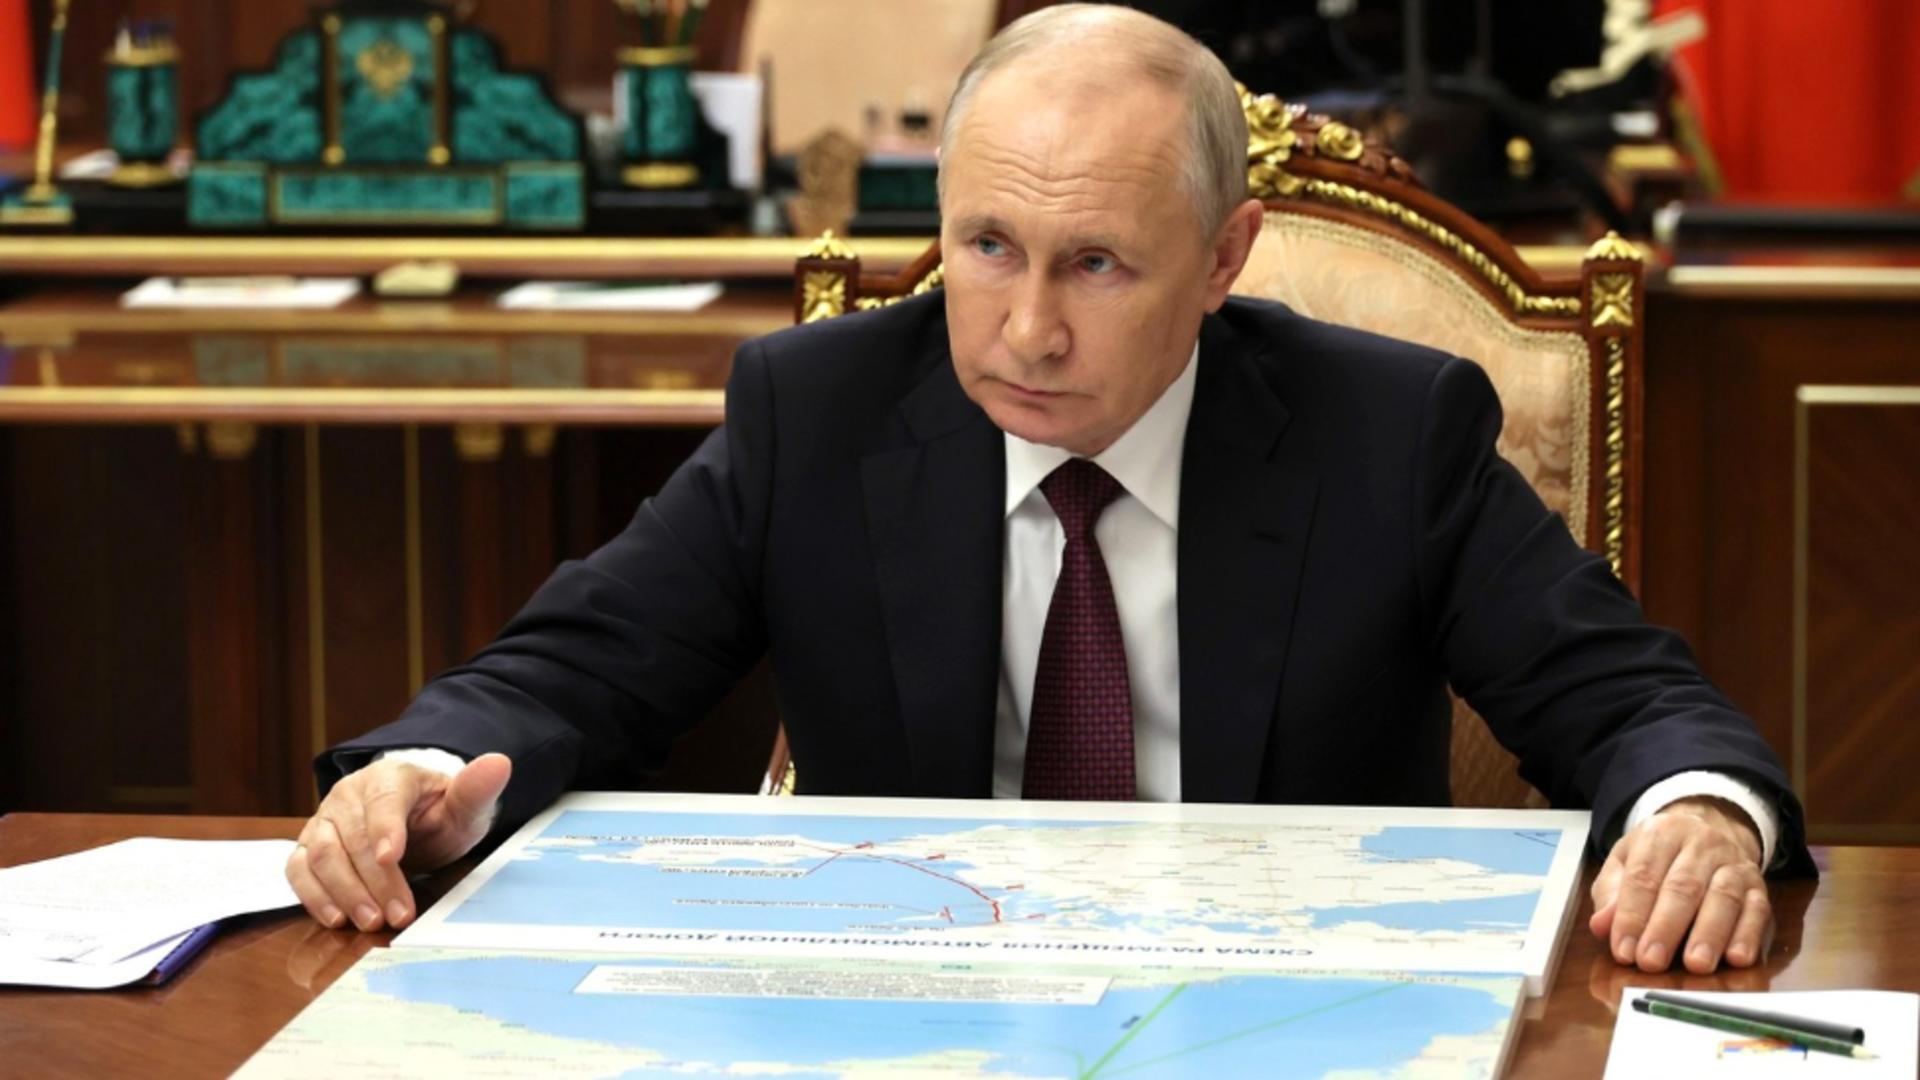 Putin le-ar fi propus americanilor încetarea războiului din Ucraina. SUA au respins orice discuție – Reuters